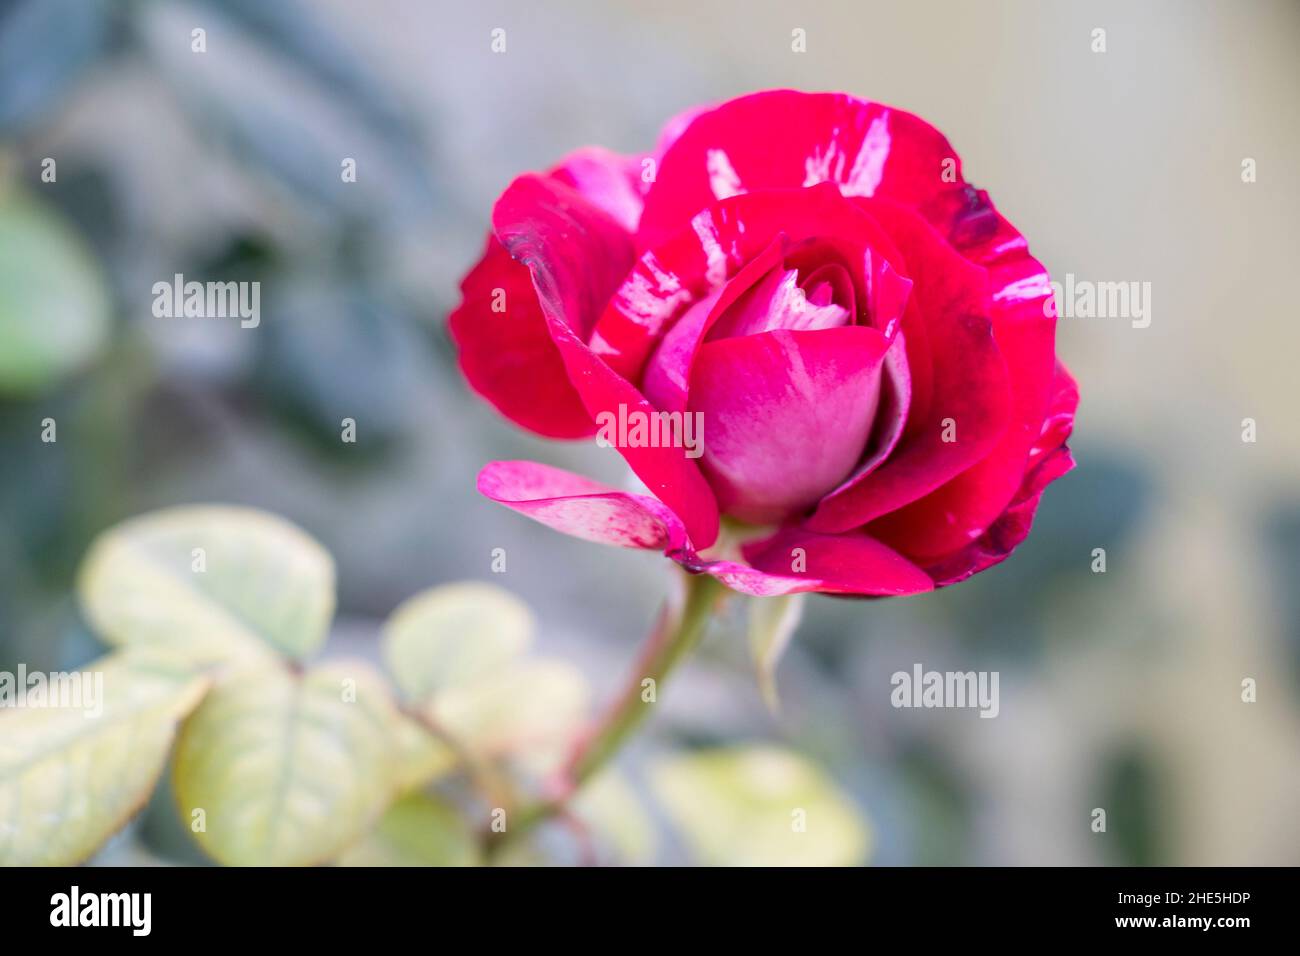 immagine del fiore di rosa abra abradata Foto Stock